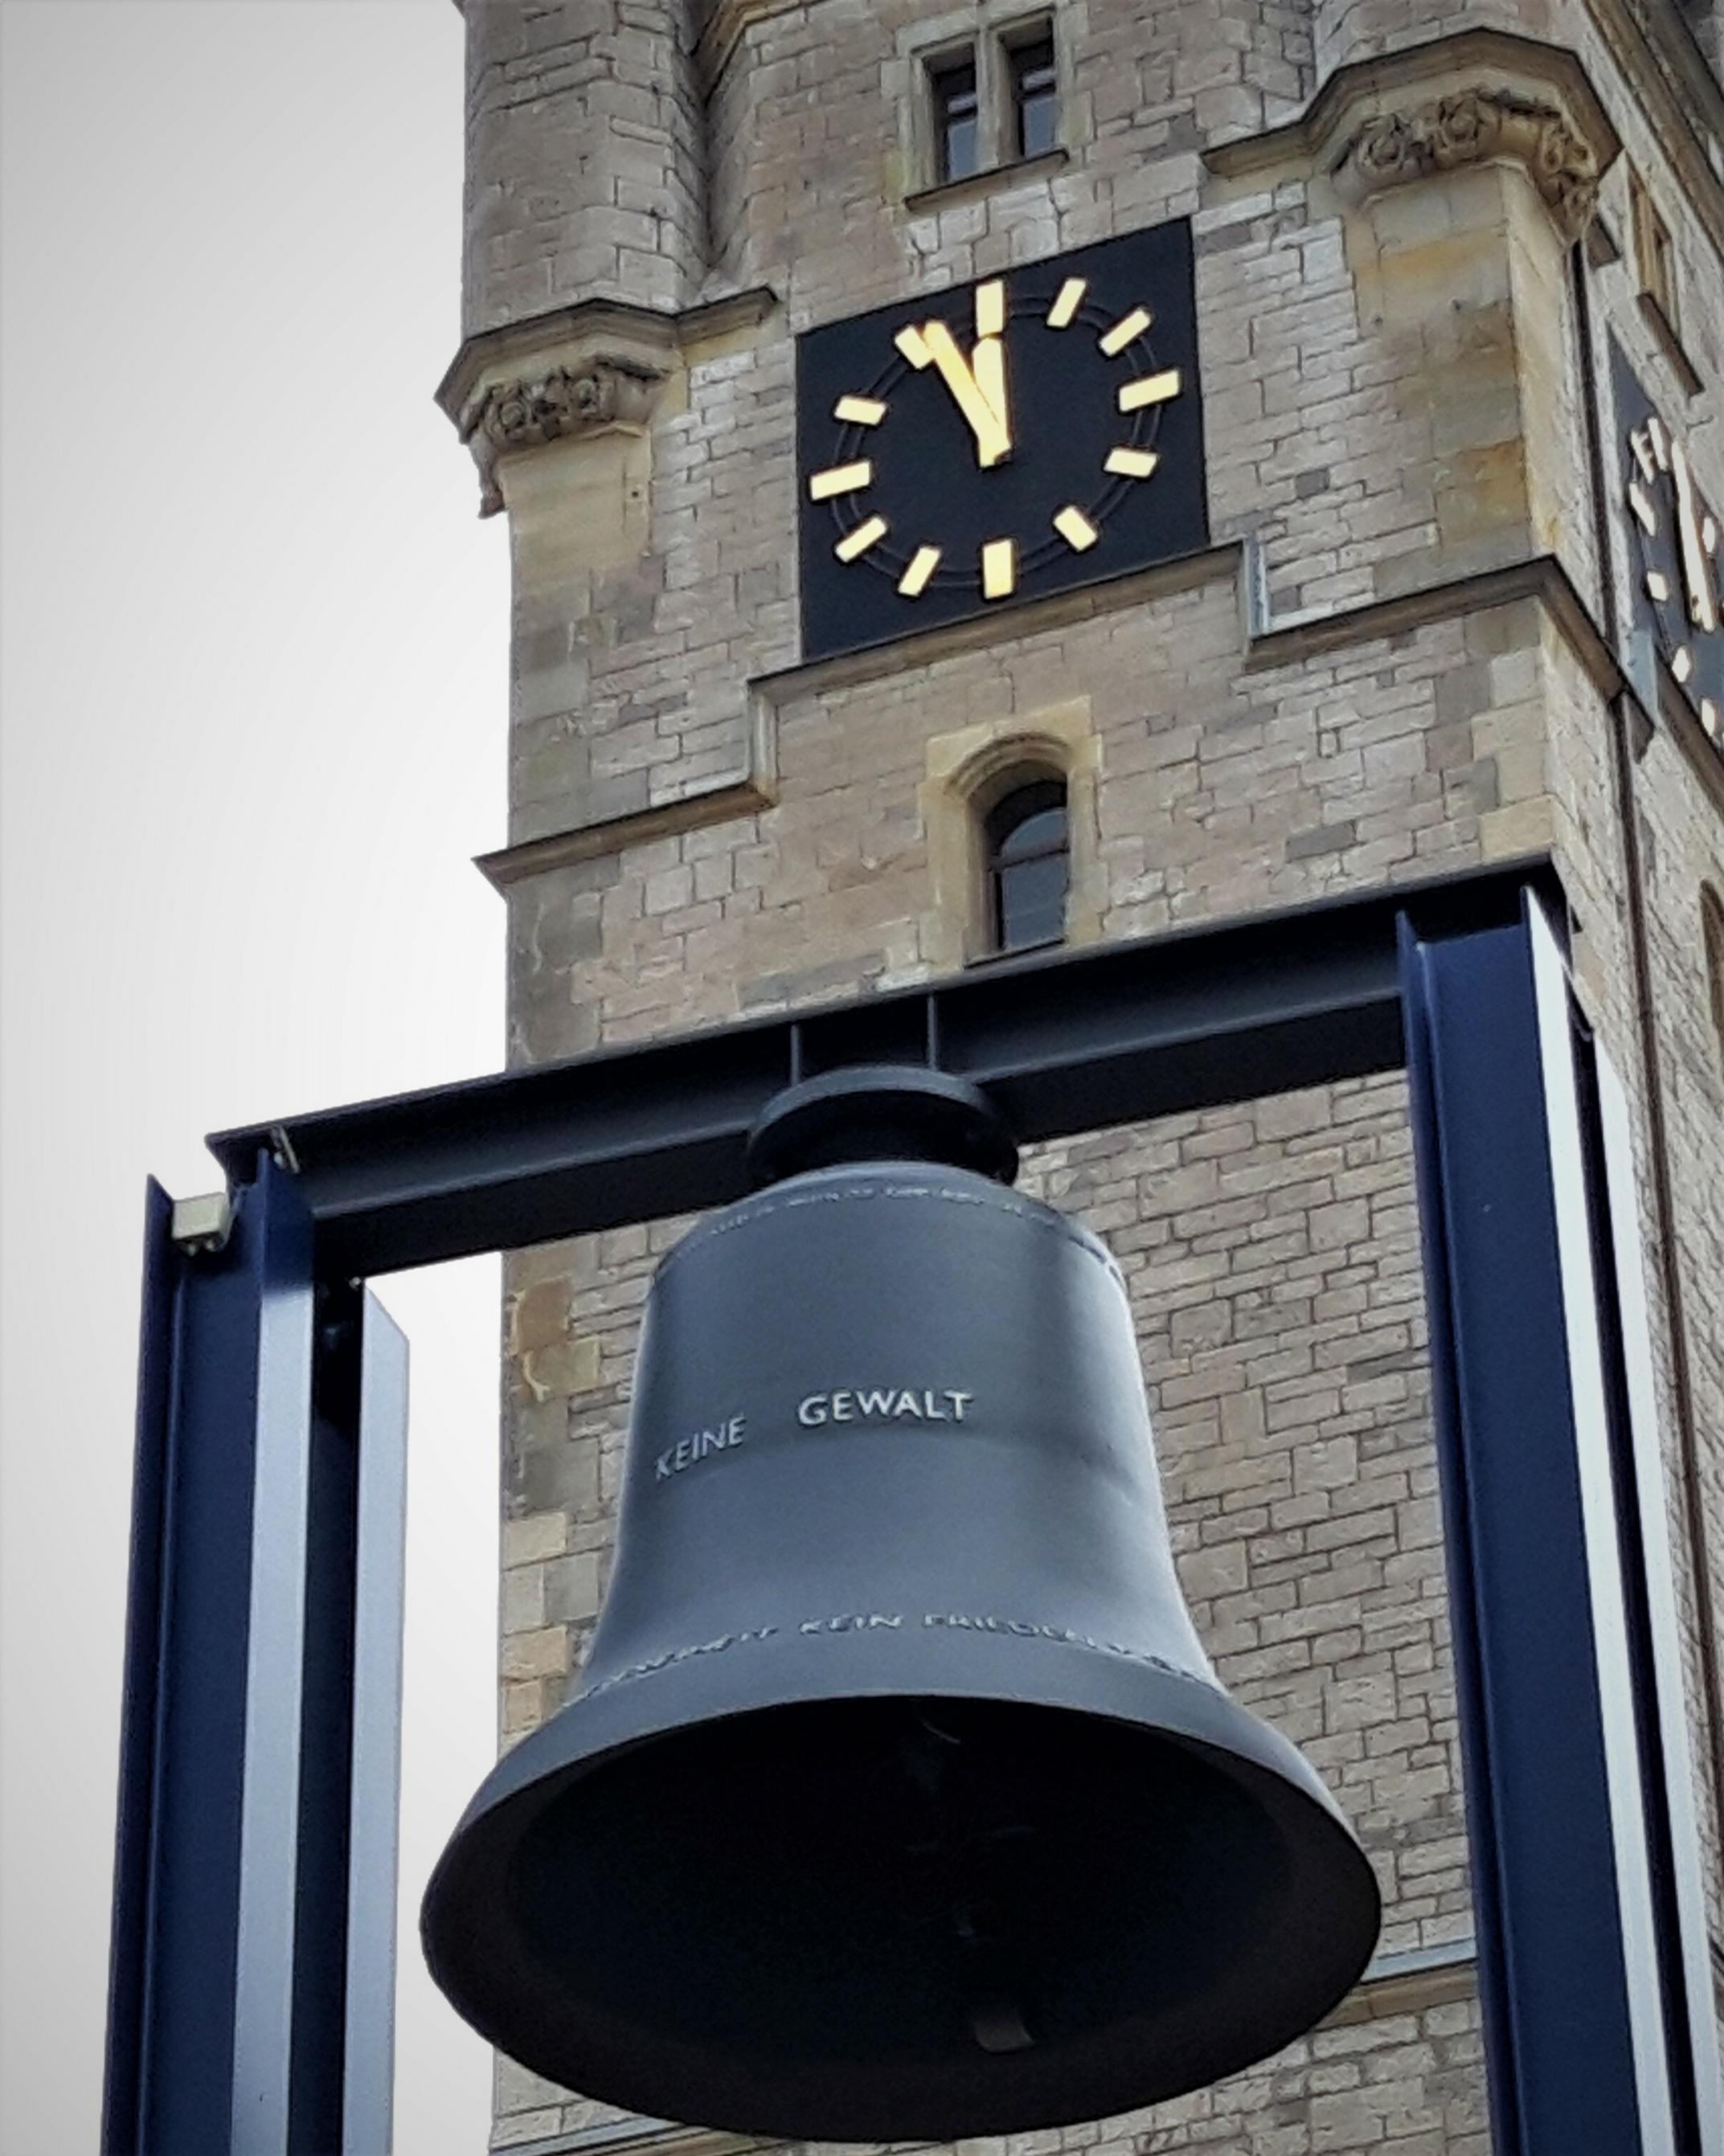 Auf der Glocke vor dem Rathausturm steht „keine Gewalt“. Die Tumuhr zeigt fünf vor Zwölf.